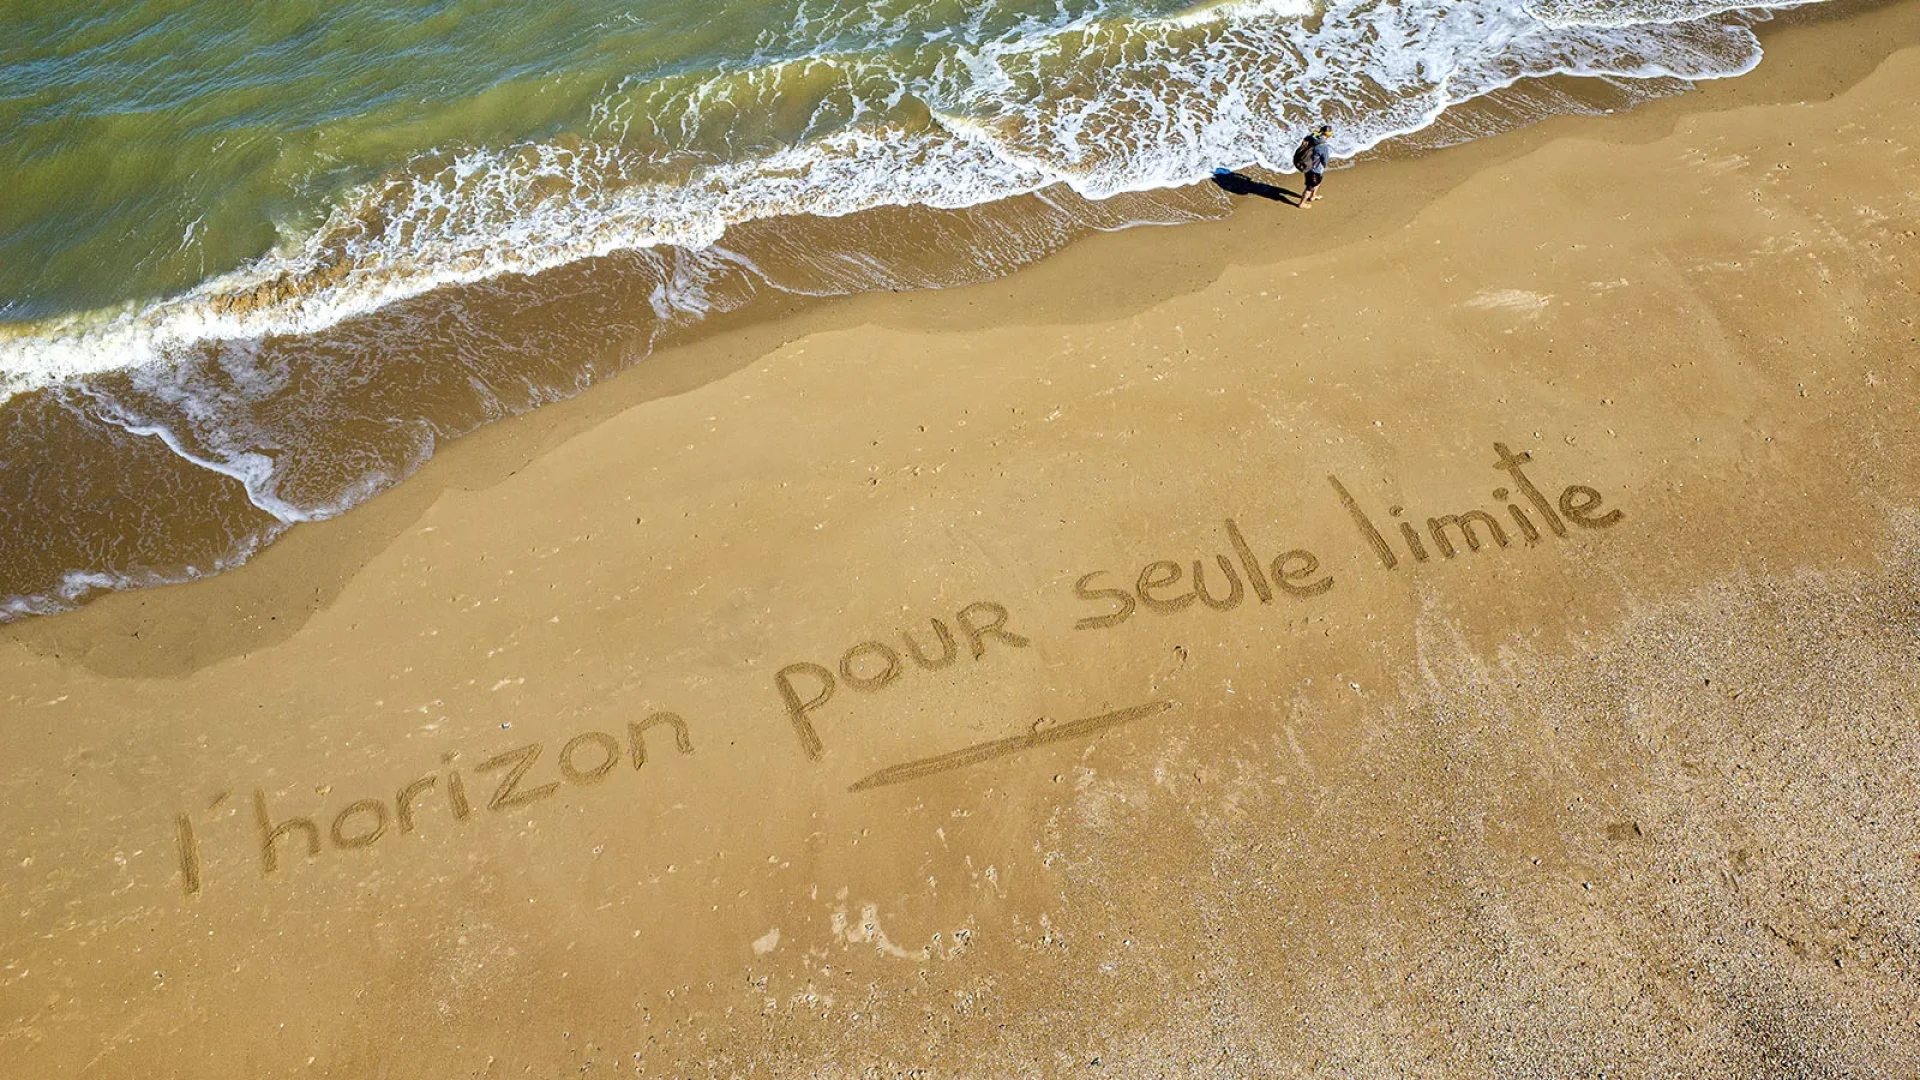 Strandbild mit "Der Horizont als einzige Grenze" geschrieben, der Slogan der Pays de Saint Jean de Monts